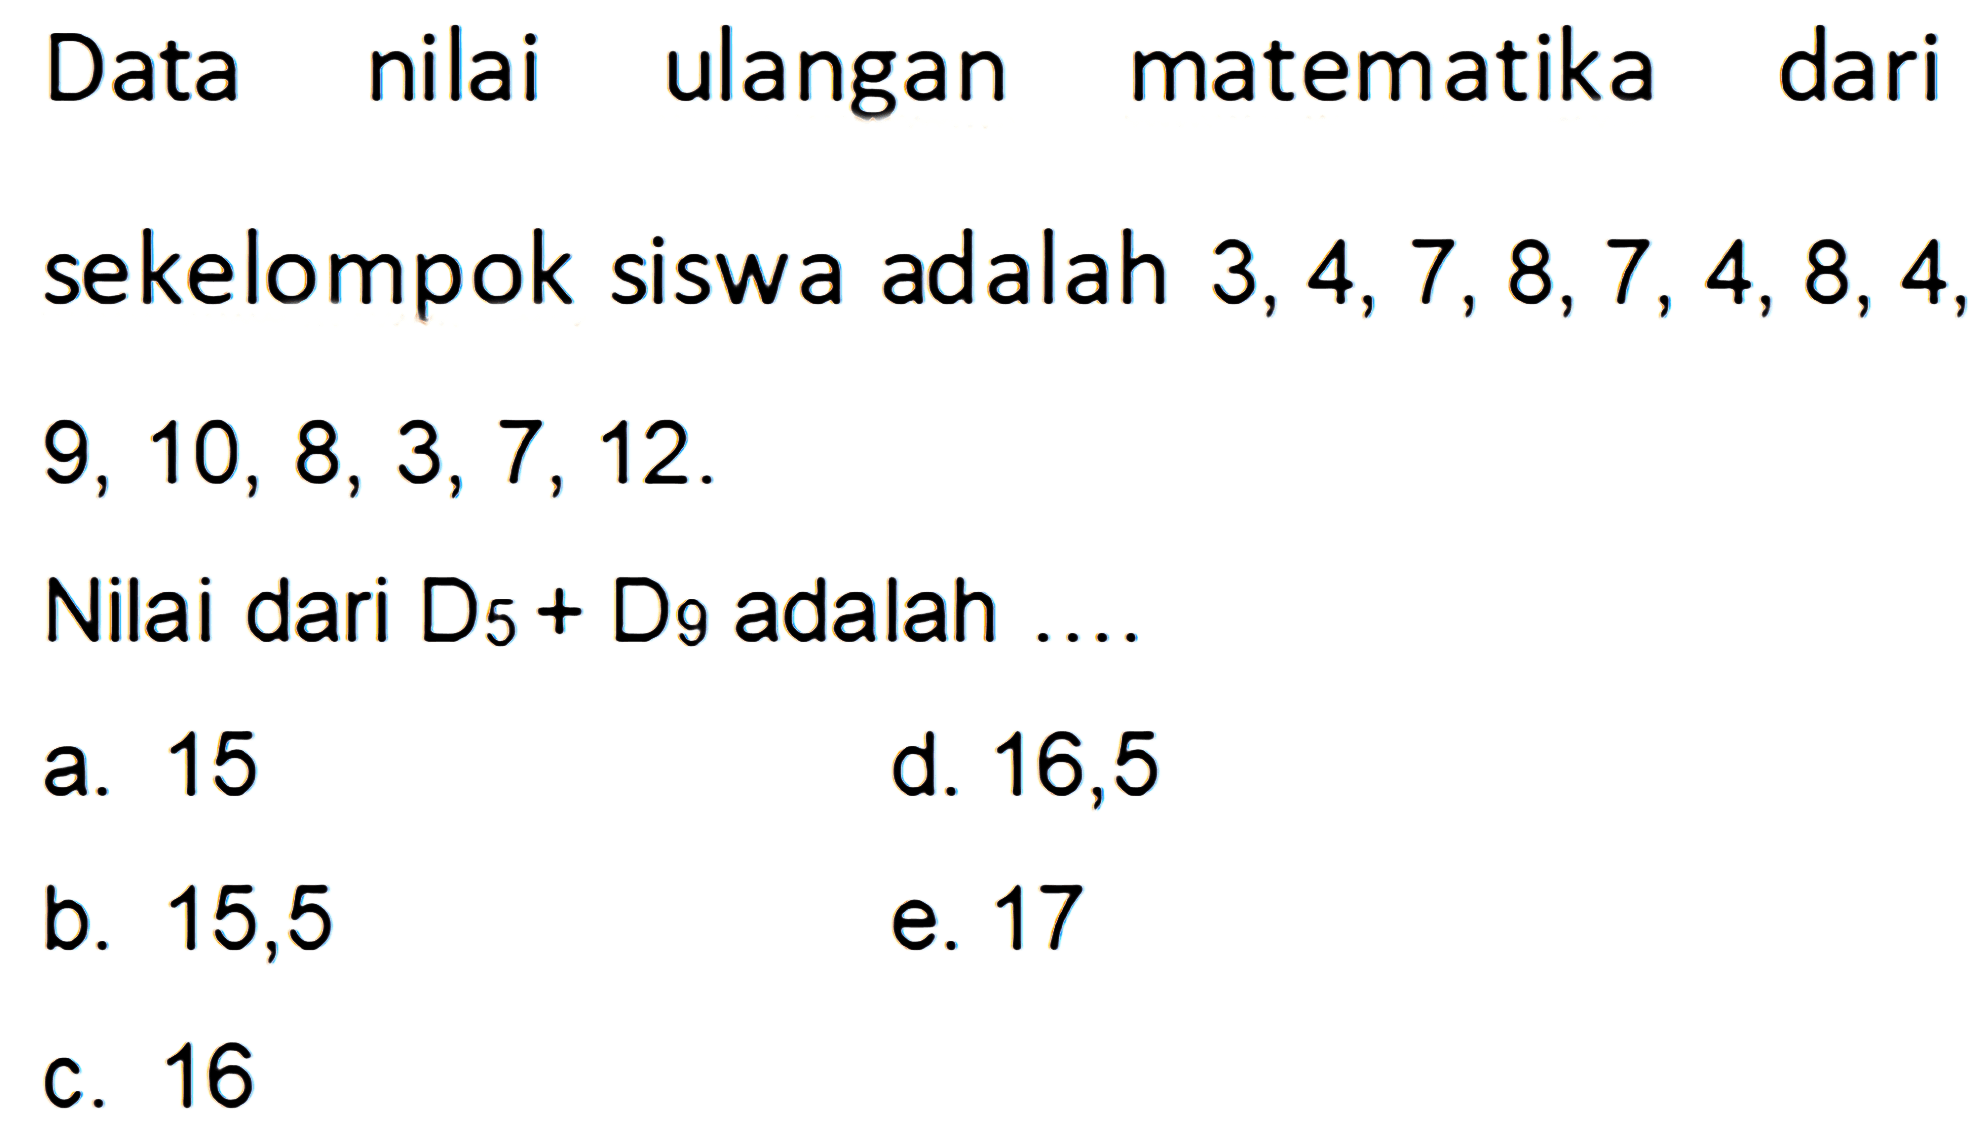 Data nilai ulangan matematika dari sekelompok siswa adalah 3,4,7, 8,7, 4, 8, 4, 9, 10, 8,3,7, 12. Nilai dari D5+D9 adalah....